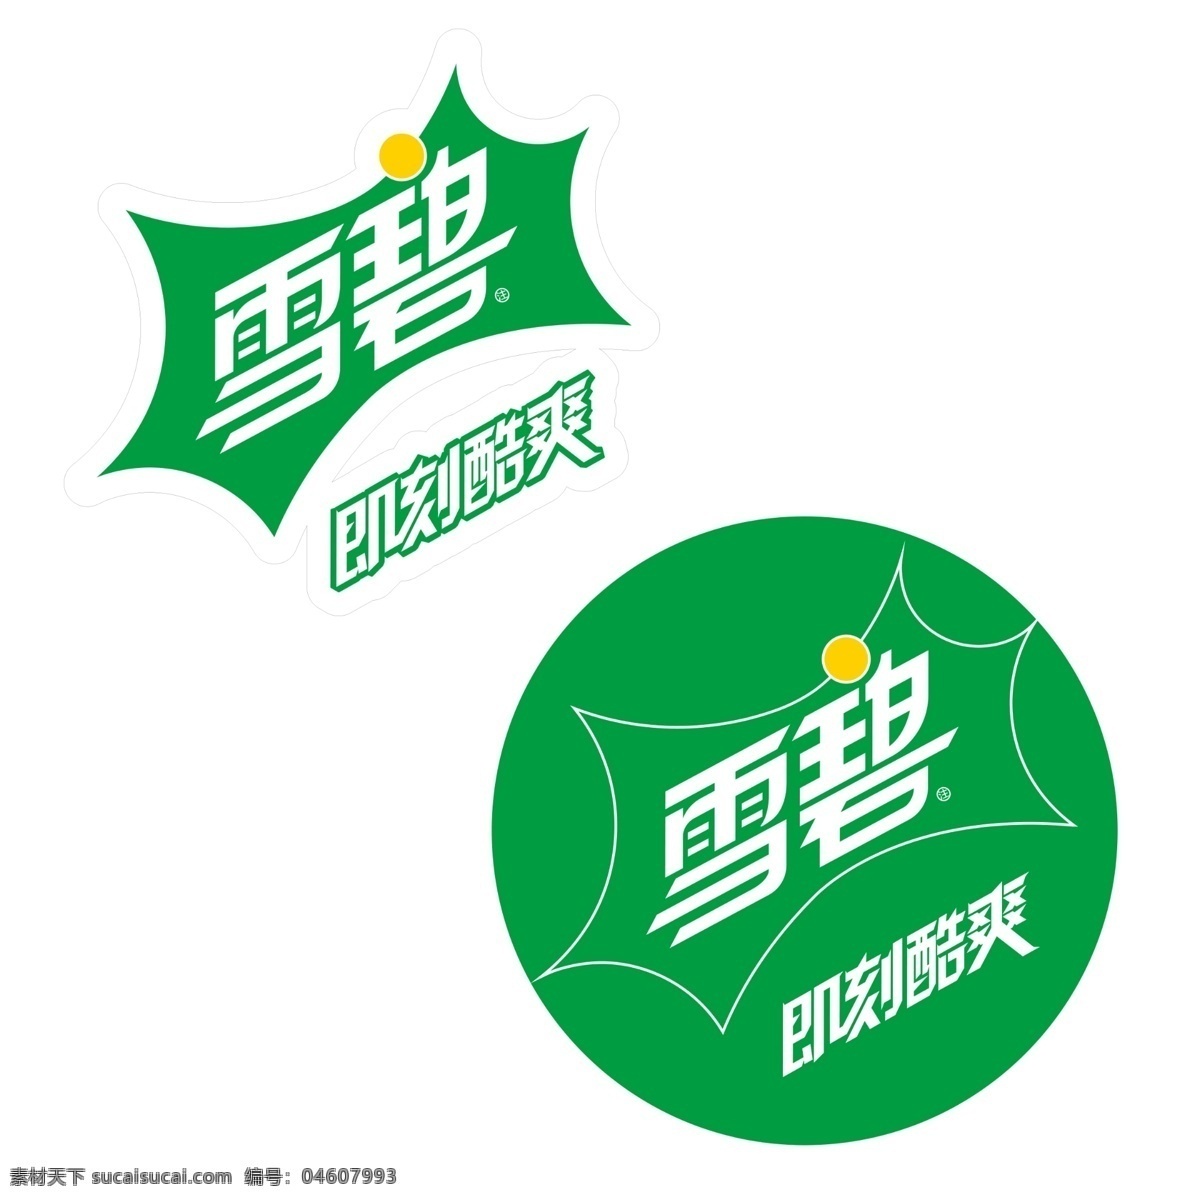 标志 雪碧最新 logo logo设计 雪碧标志 雪碧logo